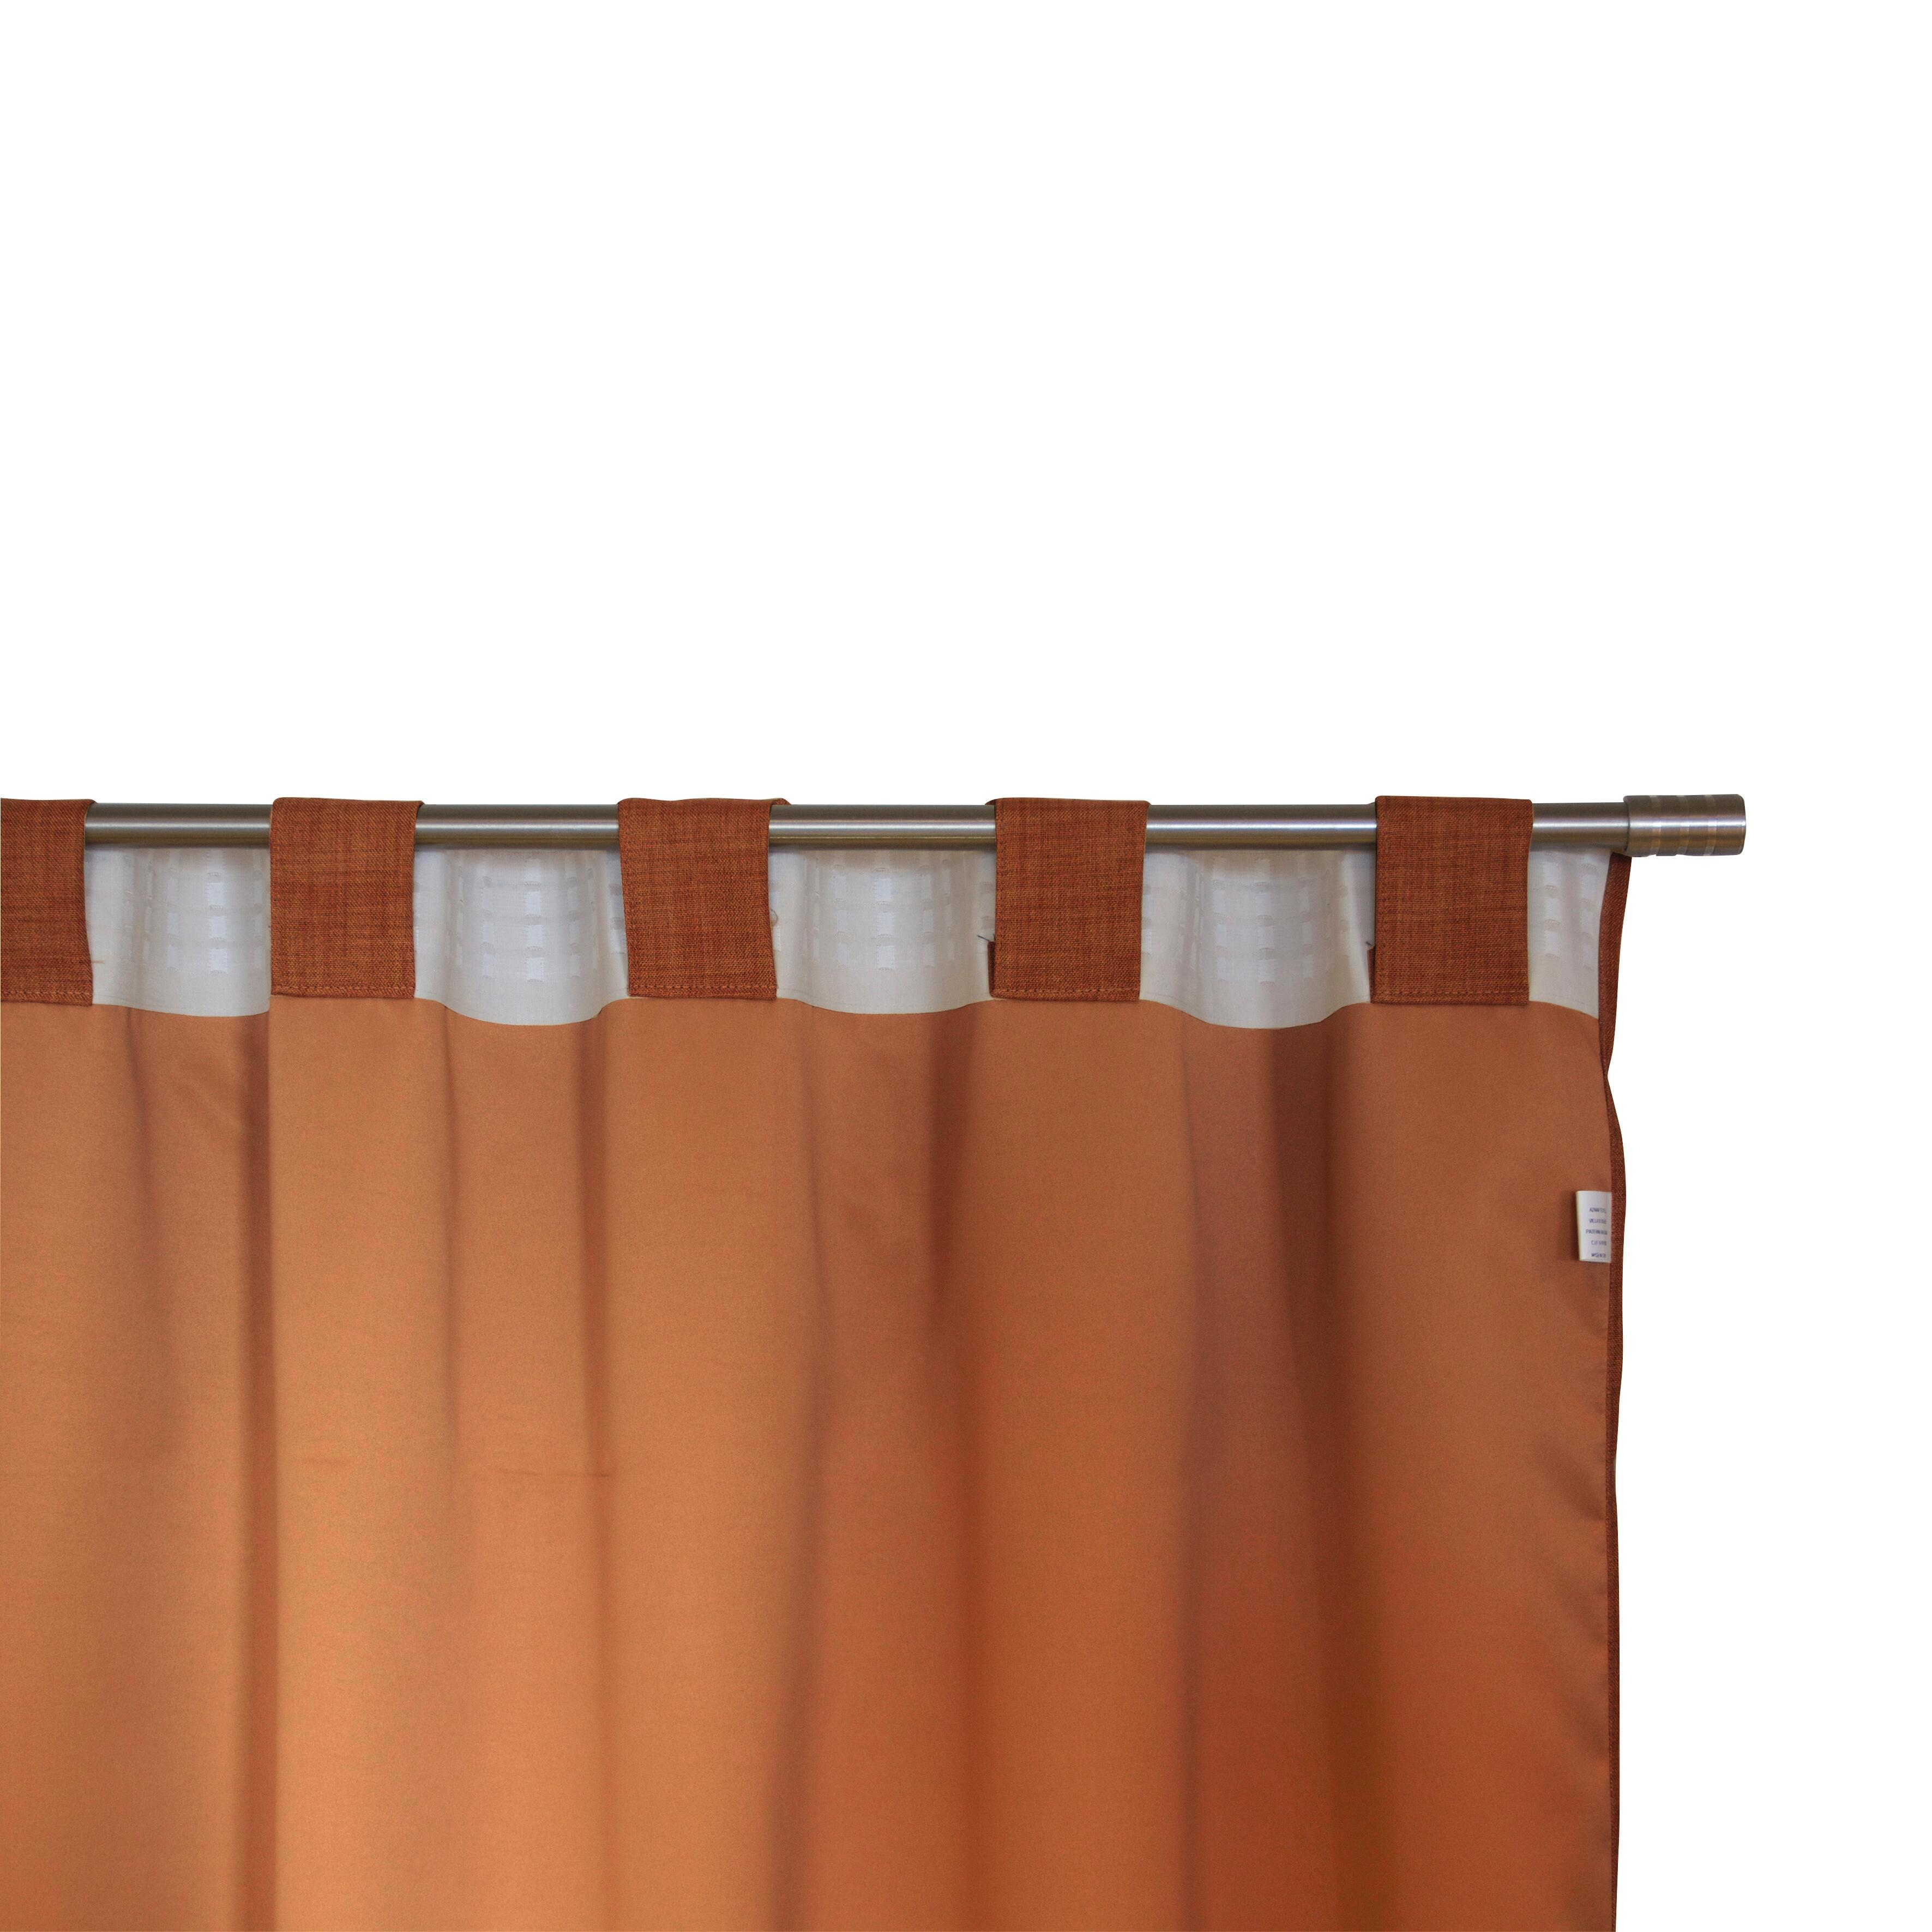 Tenda Oscurante Ignifugo Lin arancione fettuccia con passanti nascosti 140 x 300 cm - 4